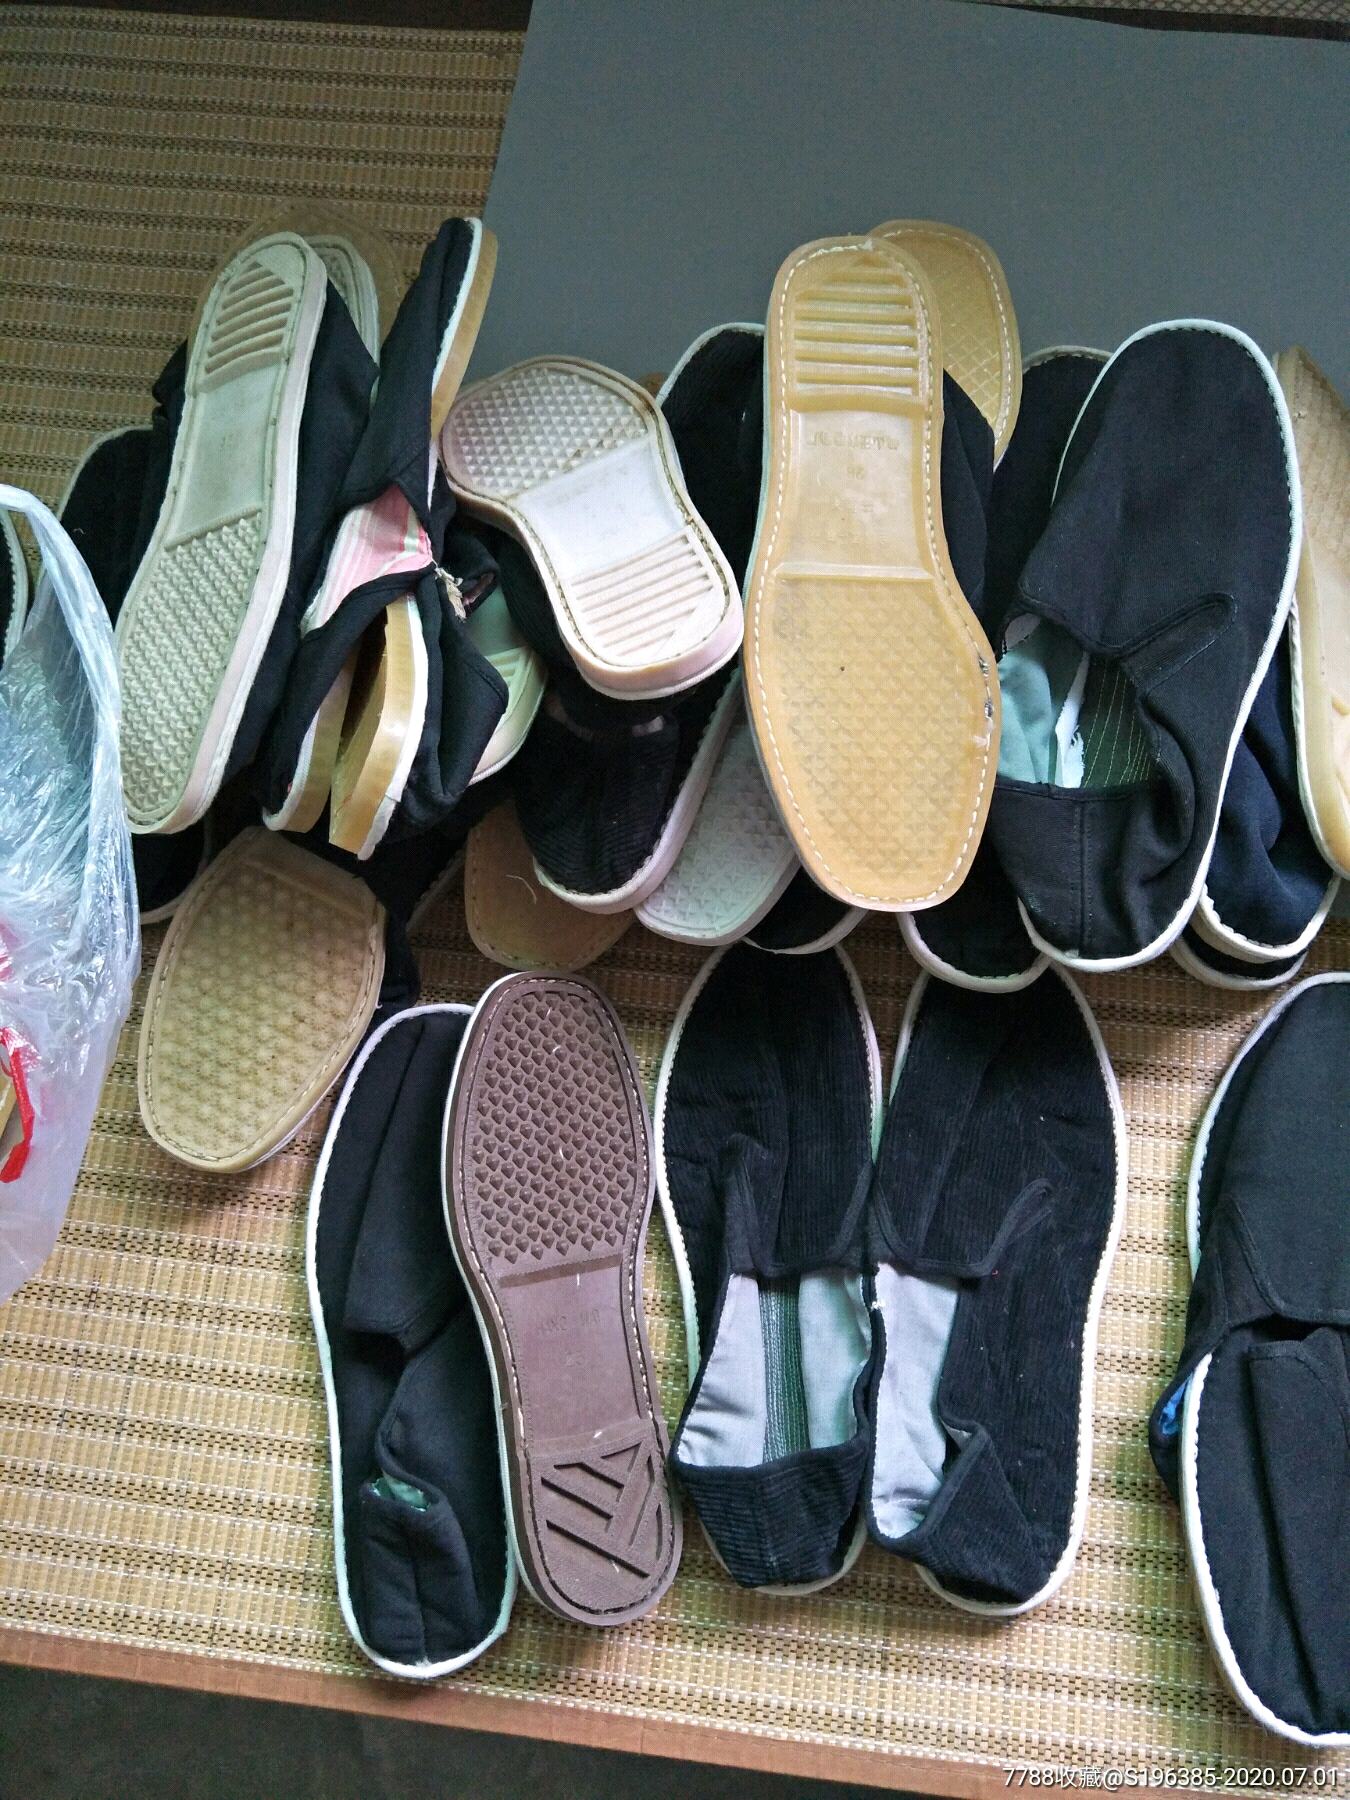 塑料底底布鞋-价格:100.0000元-se74015368-男女/鞋靴